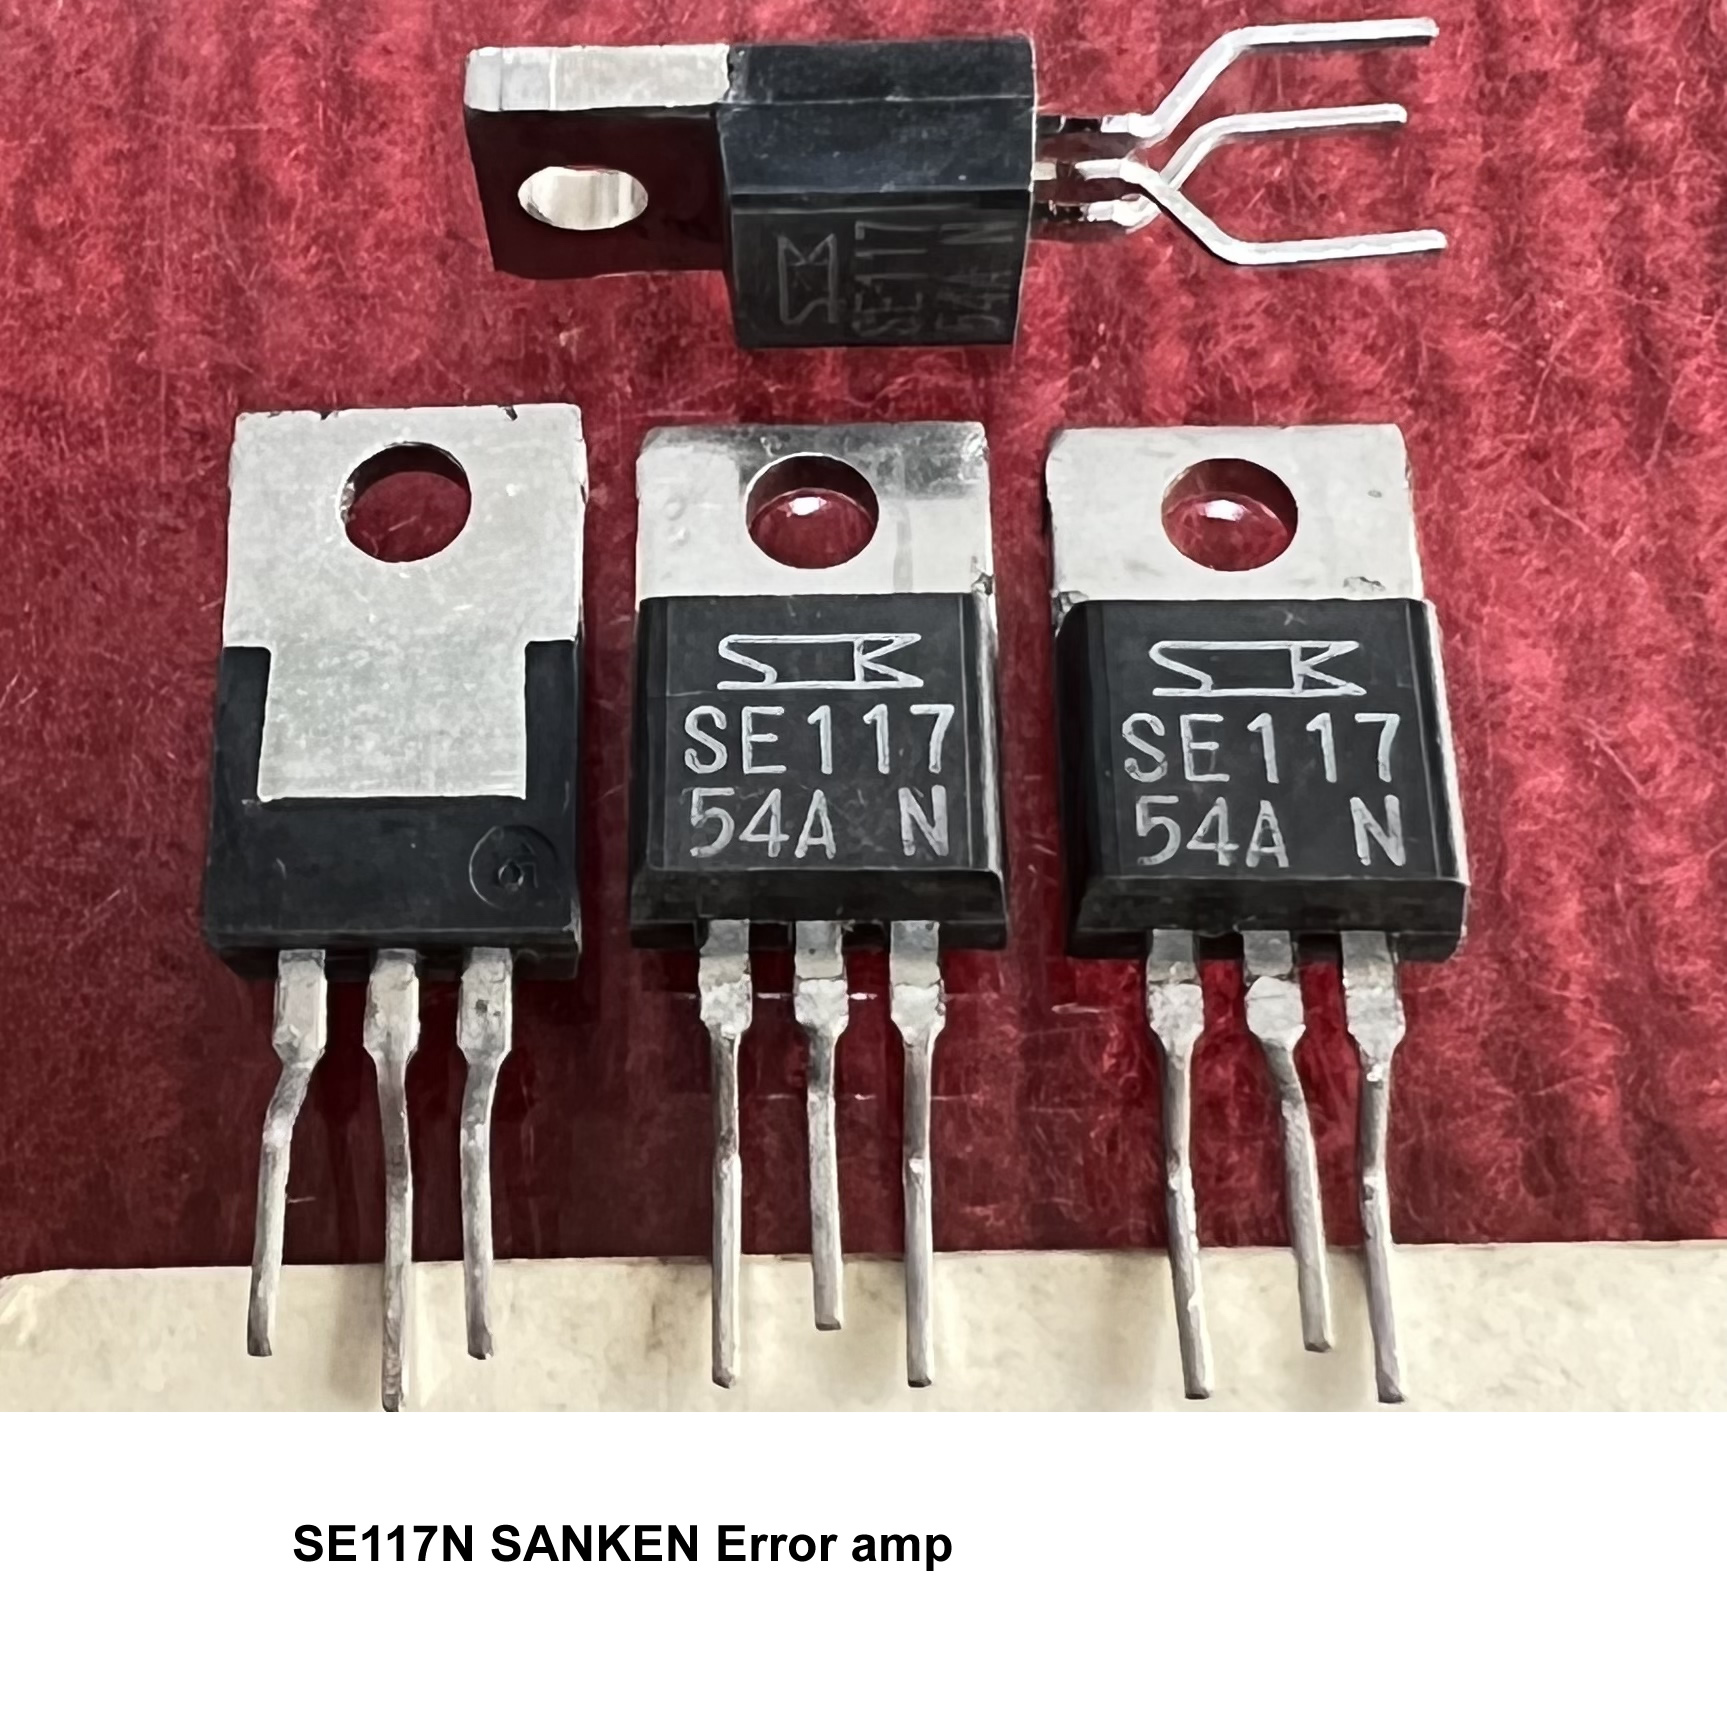 SE117N SE117 sanken to-220 Error Amplifier ICs 5pcs/lot new orig